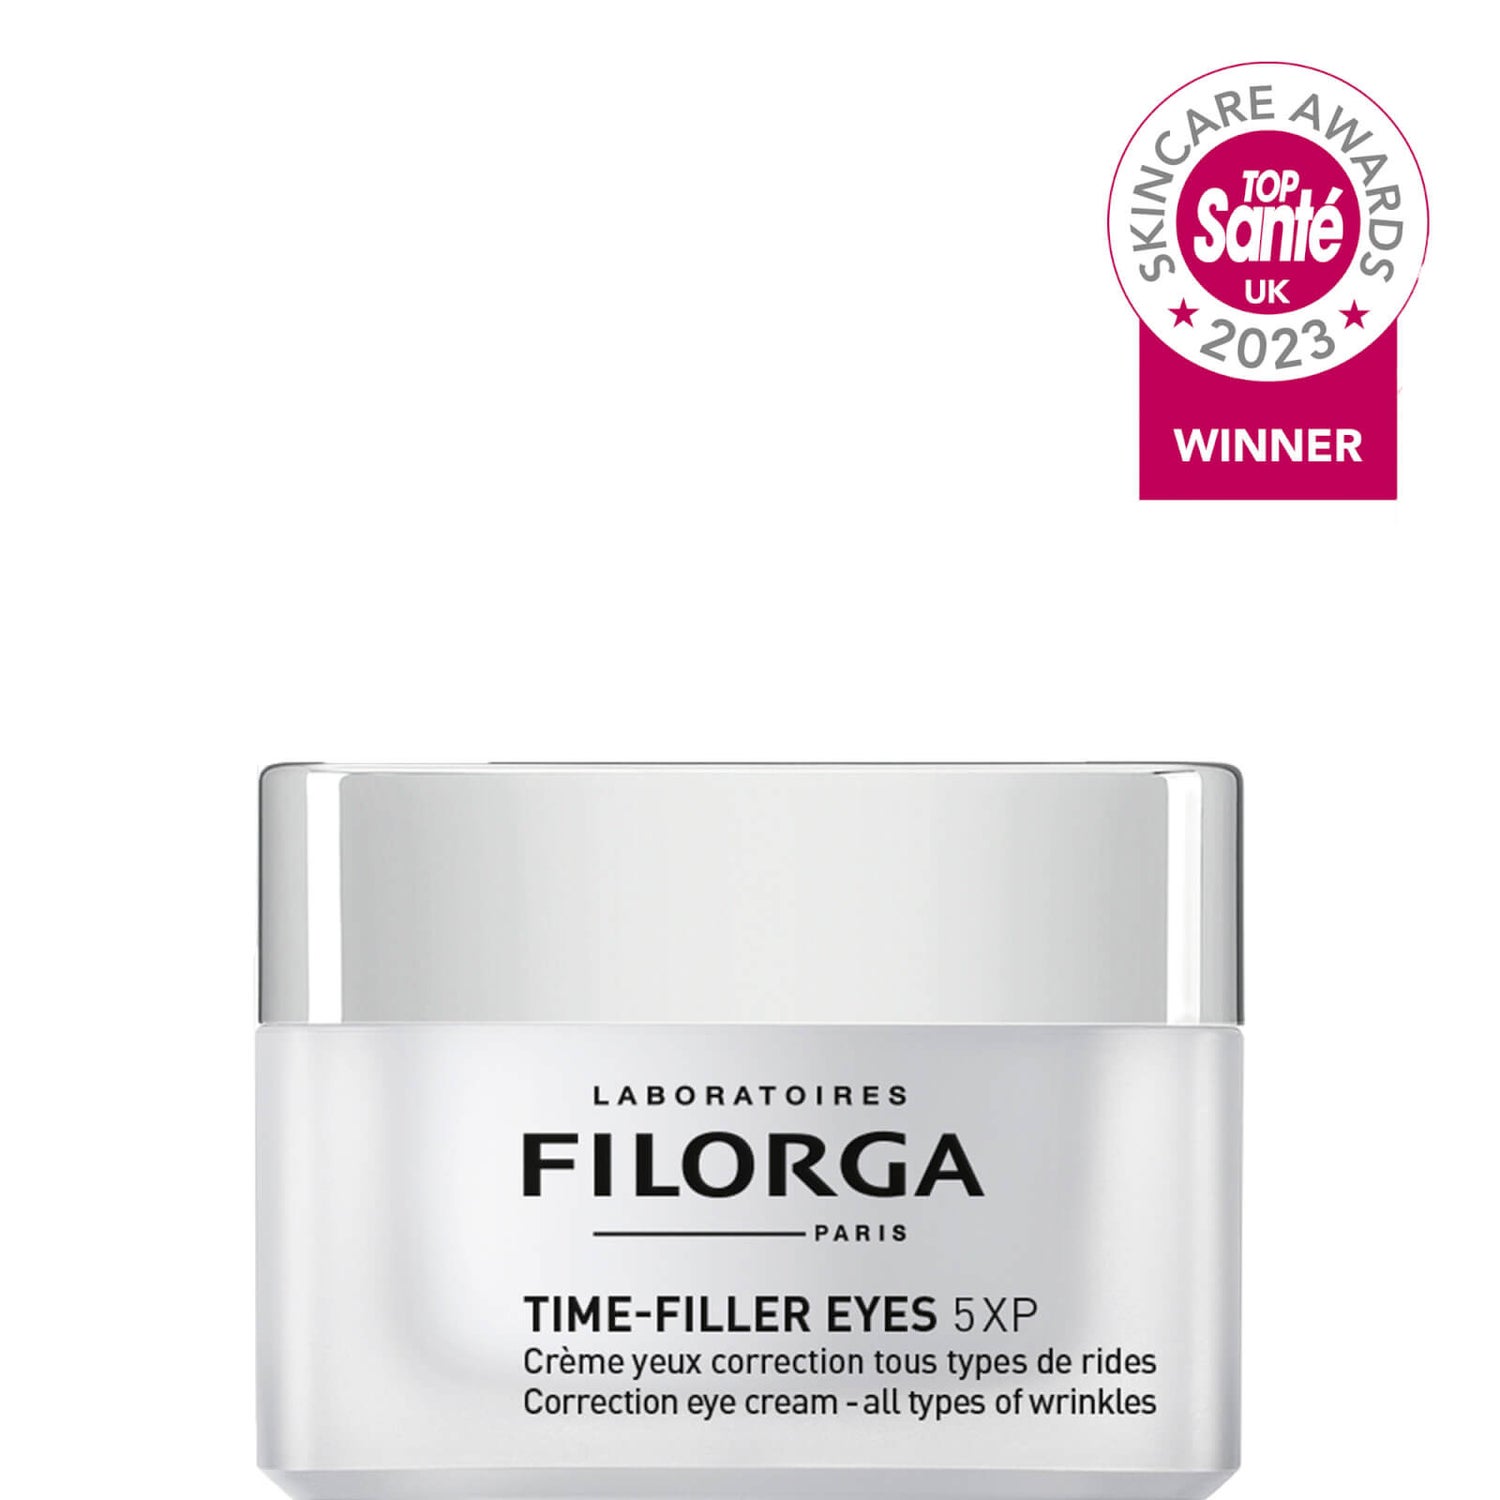 Filorga Time-Filler Eyes 5-XP Daily Anti-Aging and Wrinkle Reducing Eye Cream (0.5 oz.)